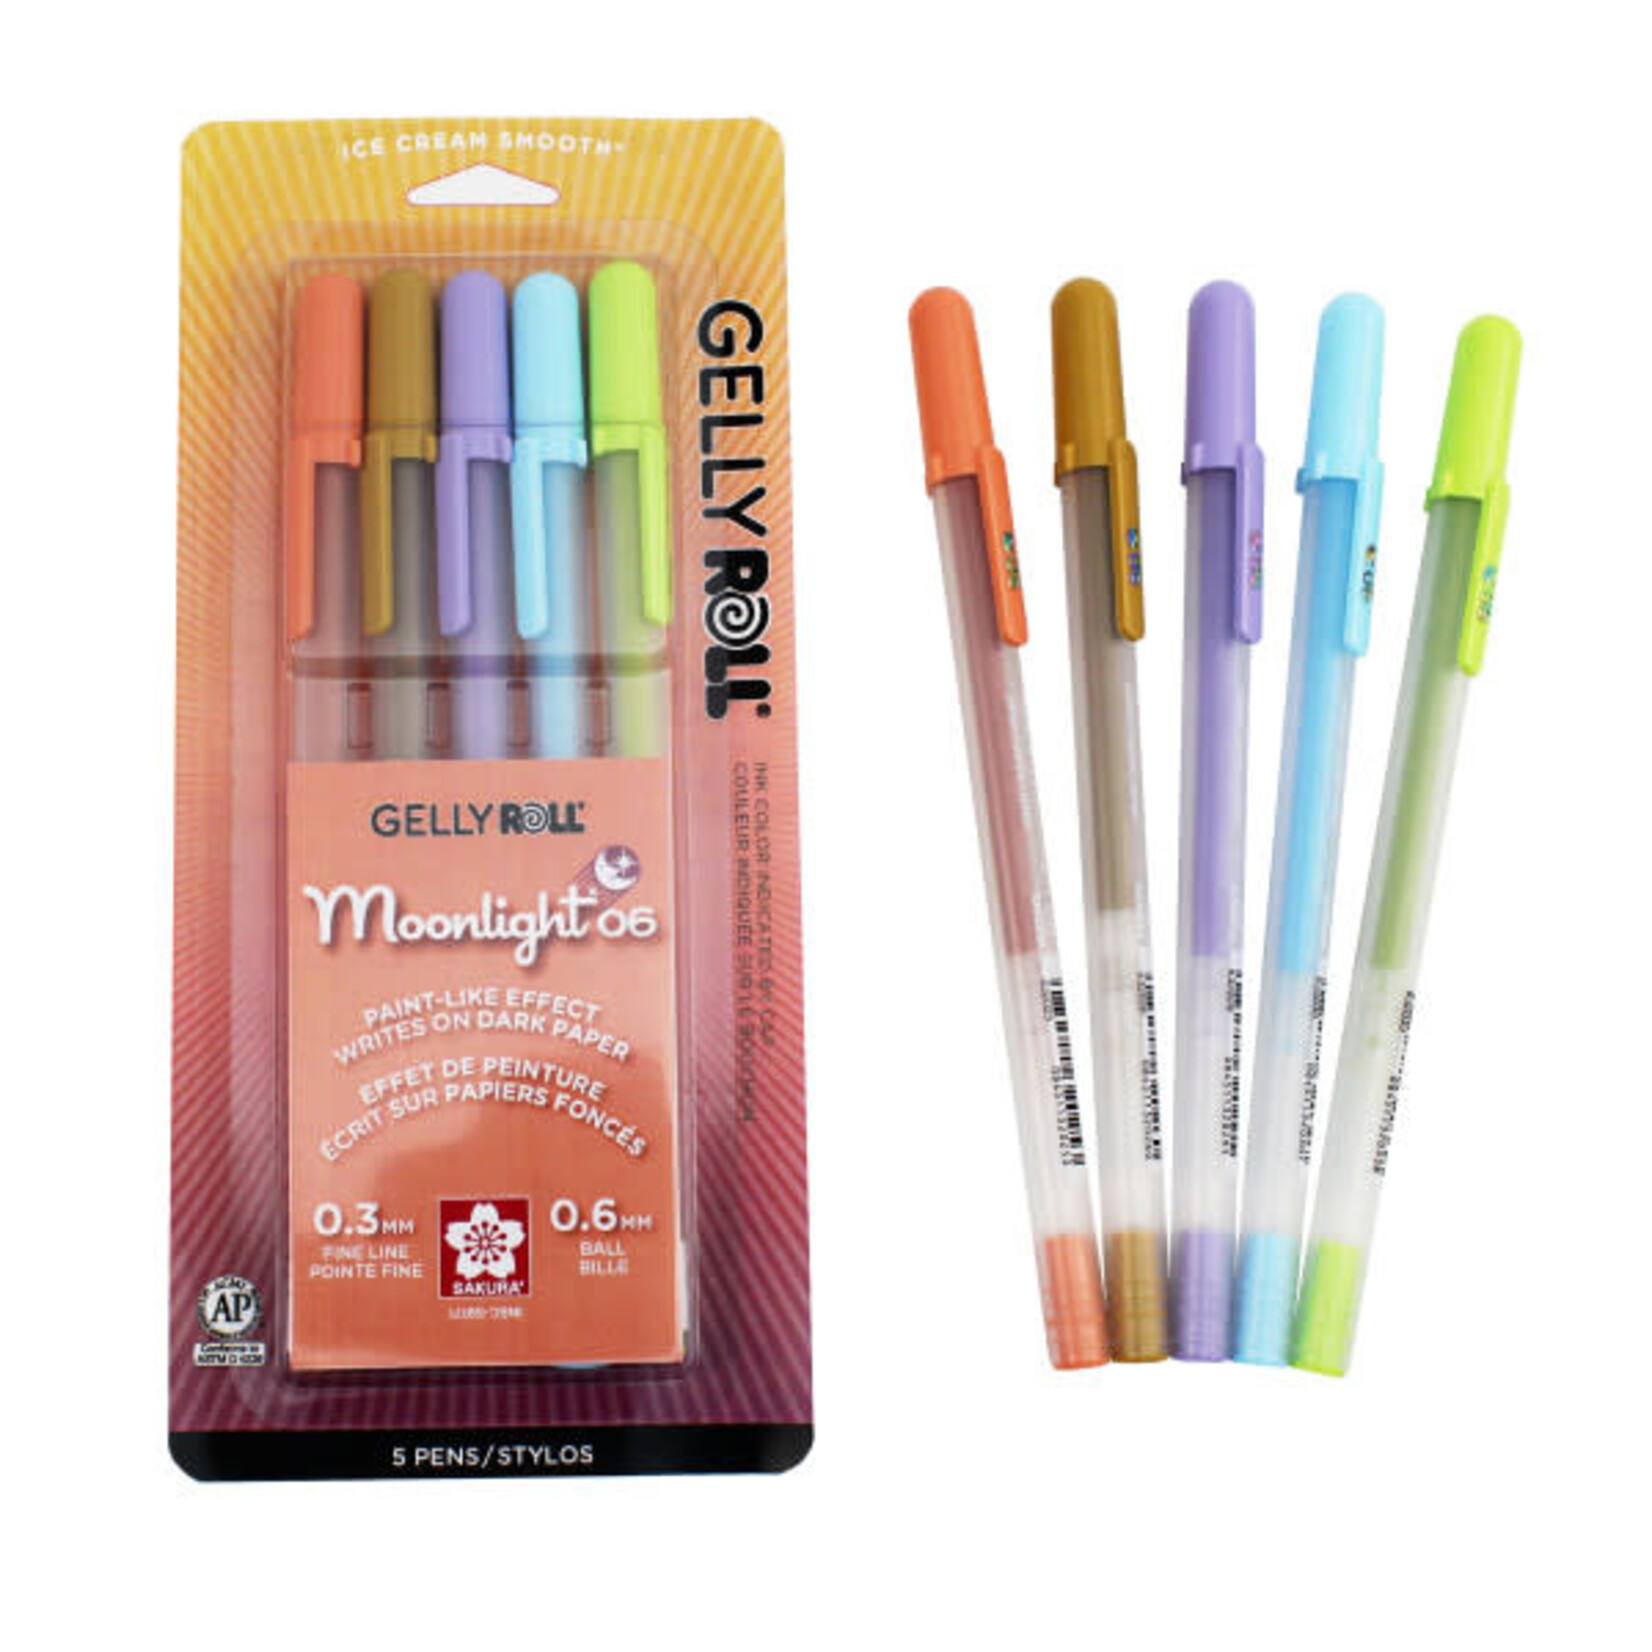 Sakura Gelly Roll Moonlight Pen Sets, 5-Color Daylight Fine Set